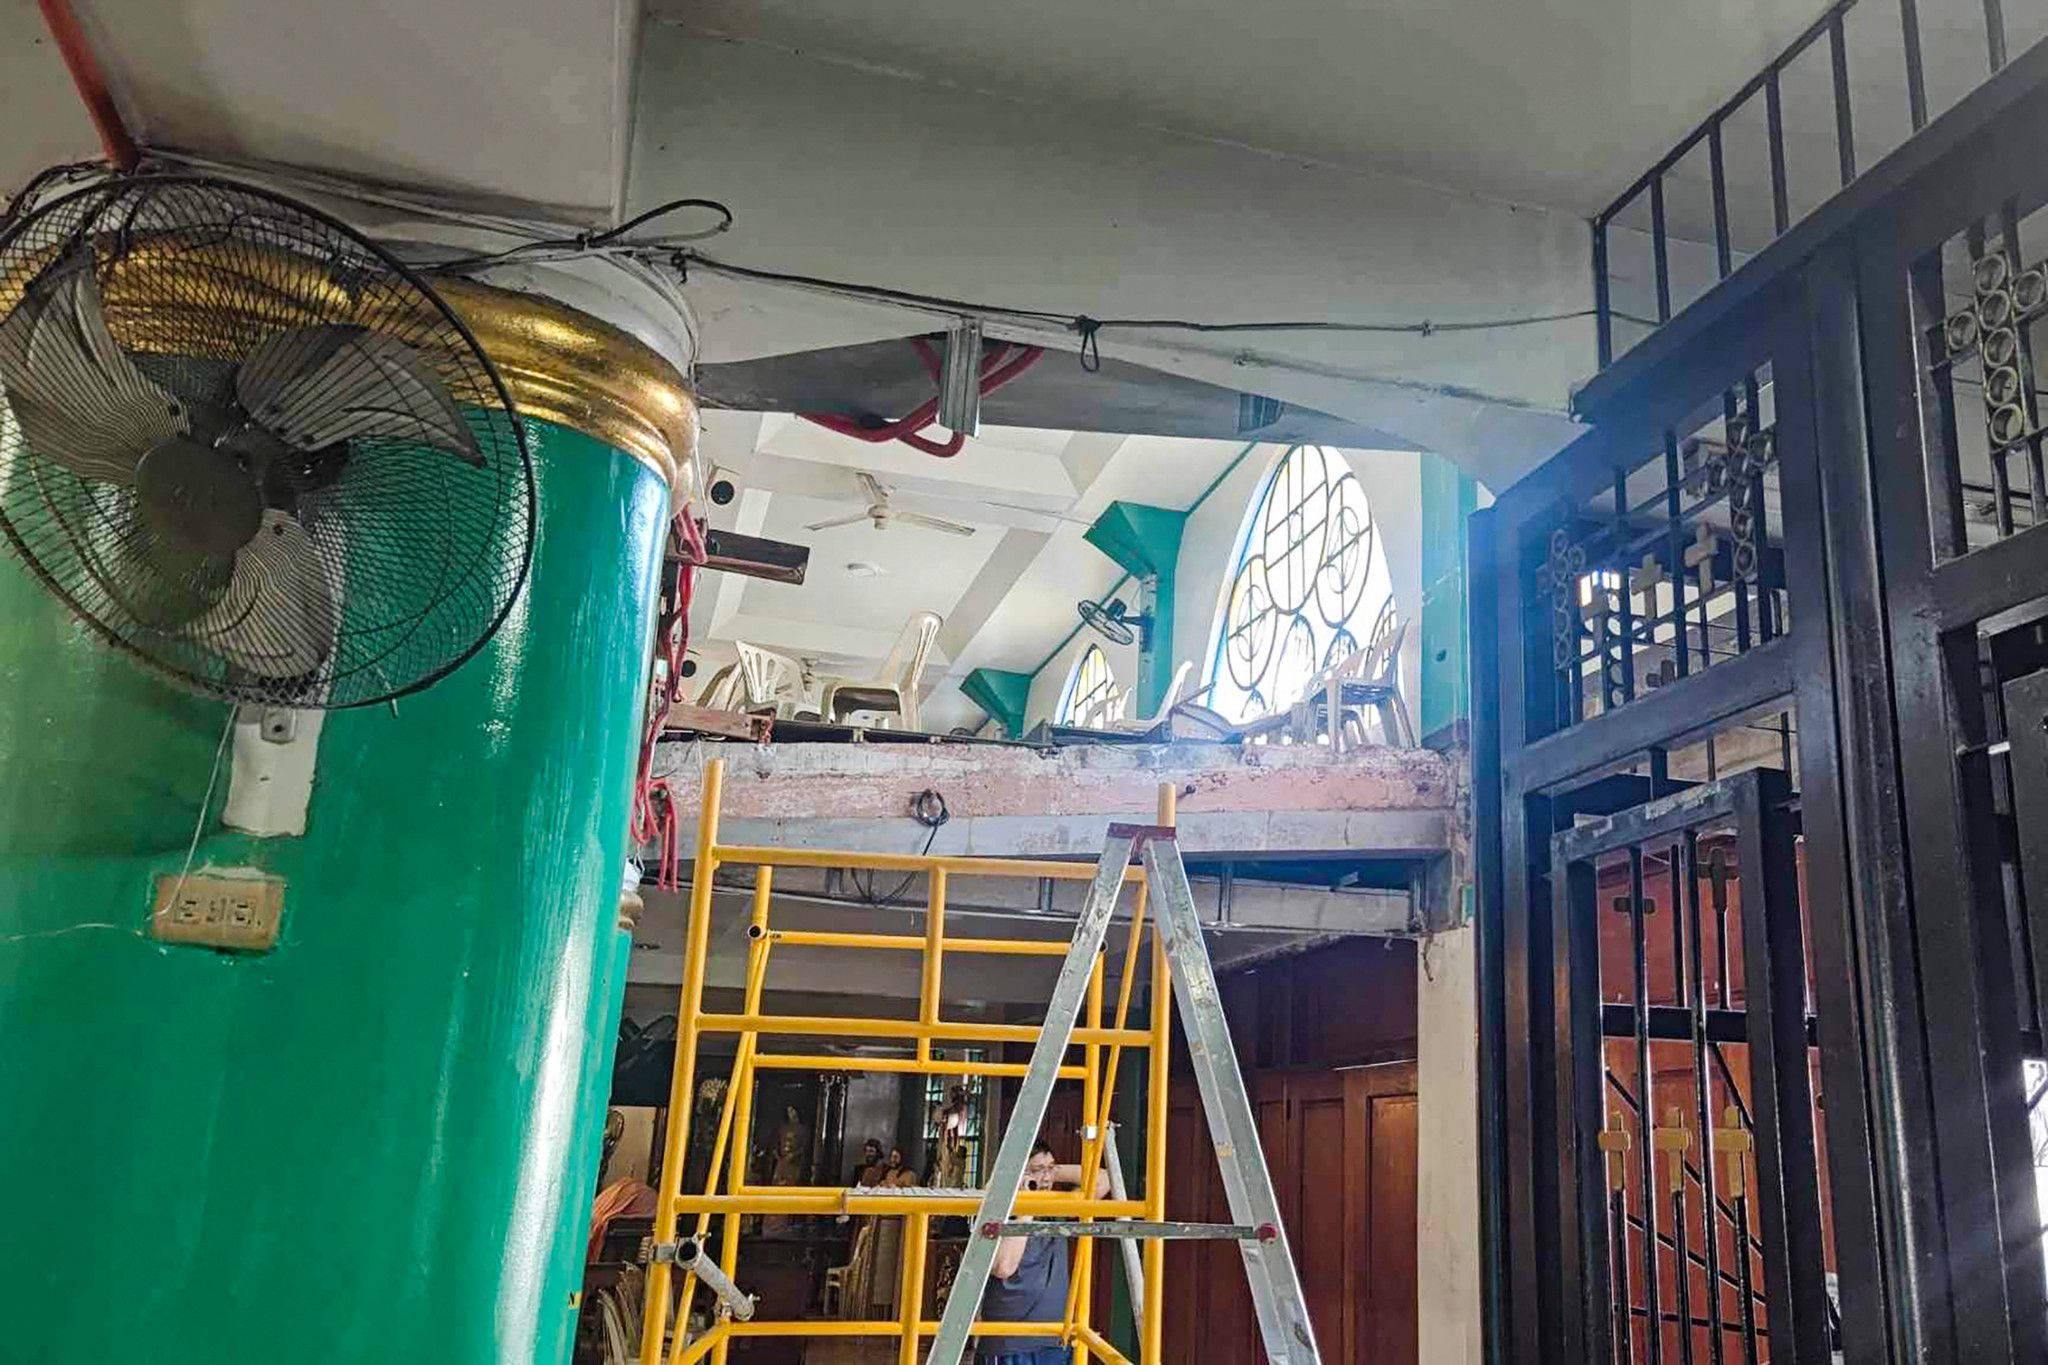 Le balcon d'une église s'effondre: 54 blessés